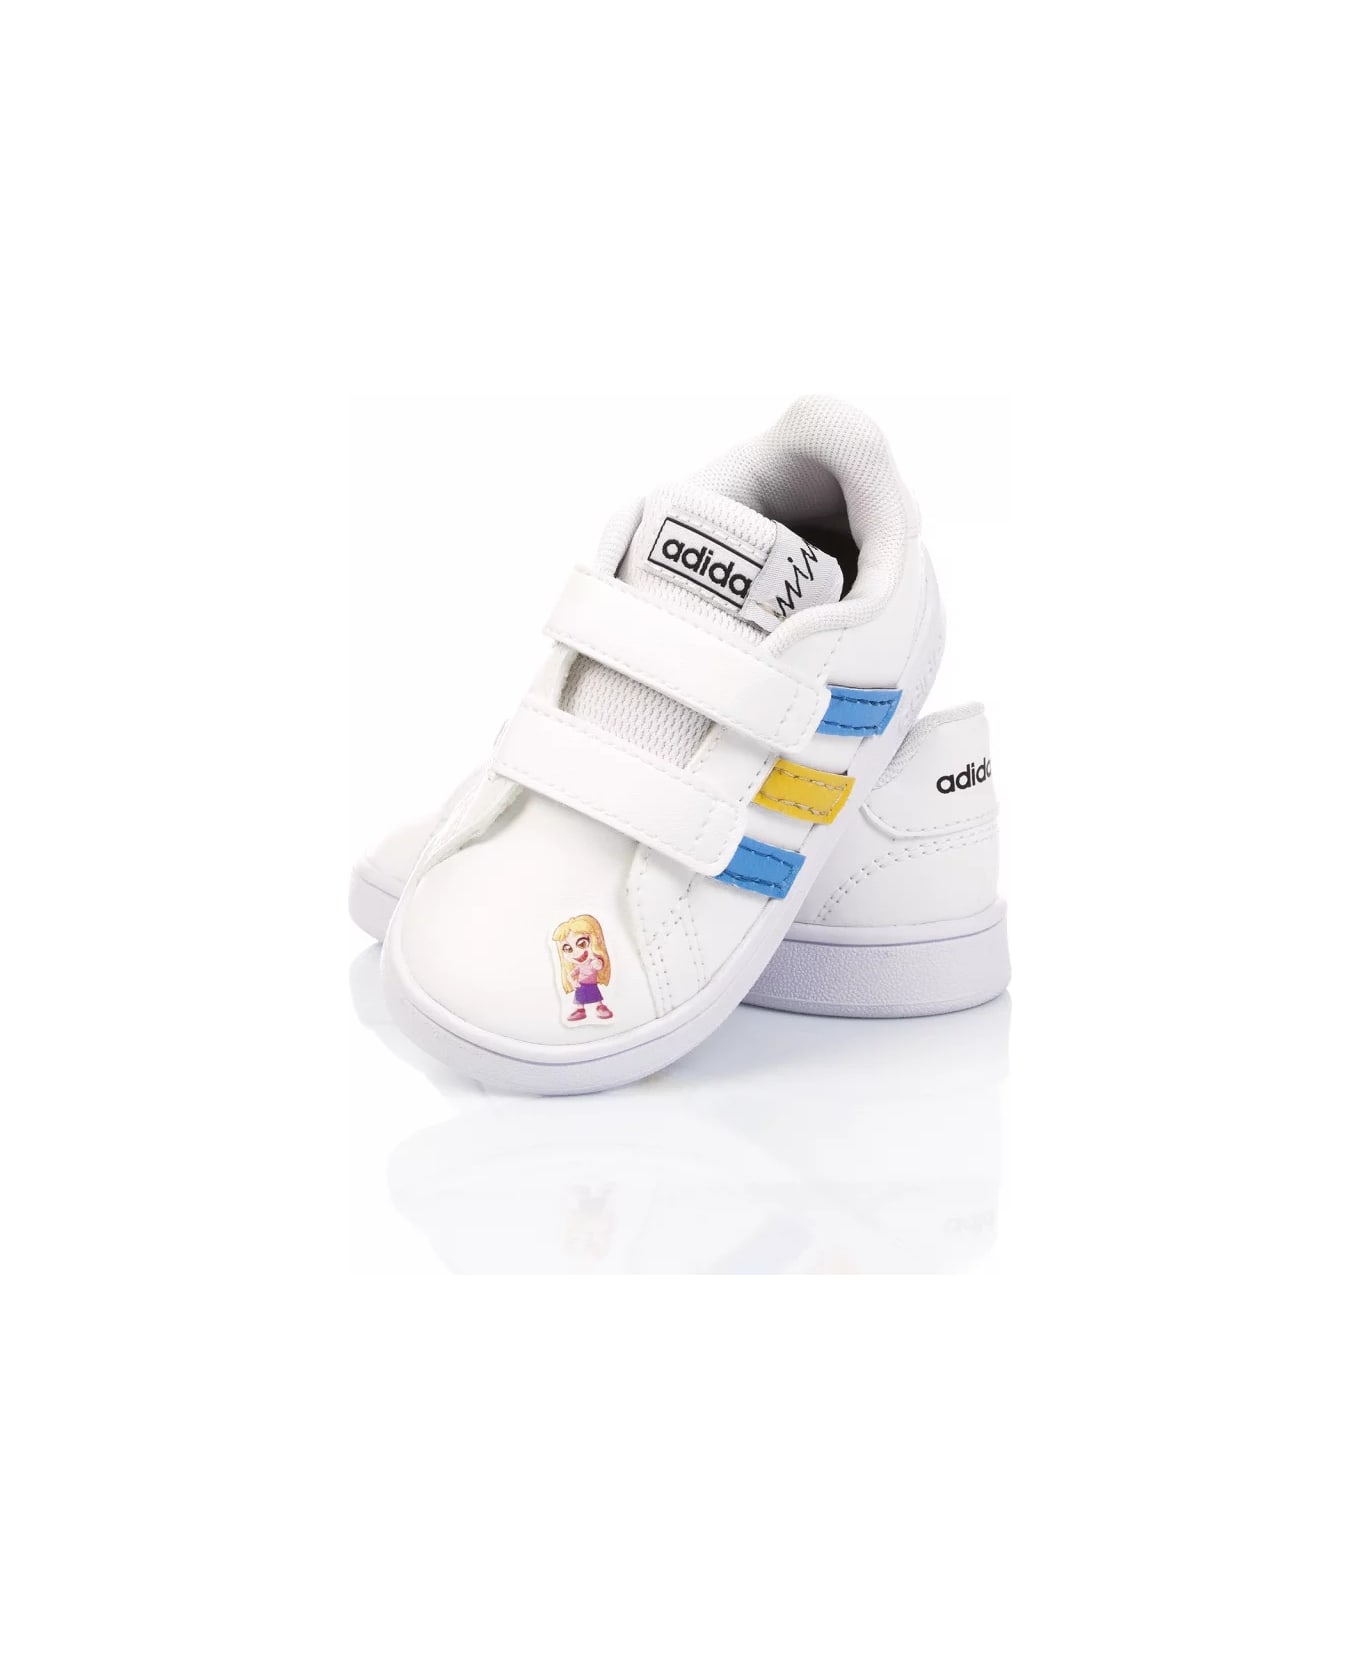 Mimanera Adidas Baby Ninna E Matti Customized Mimanera